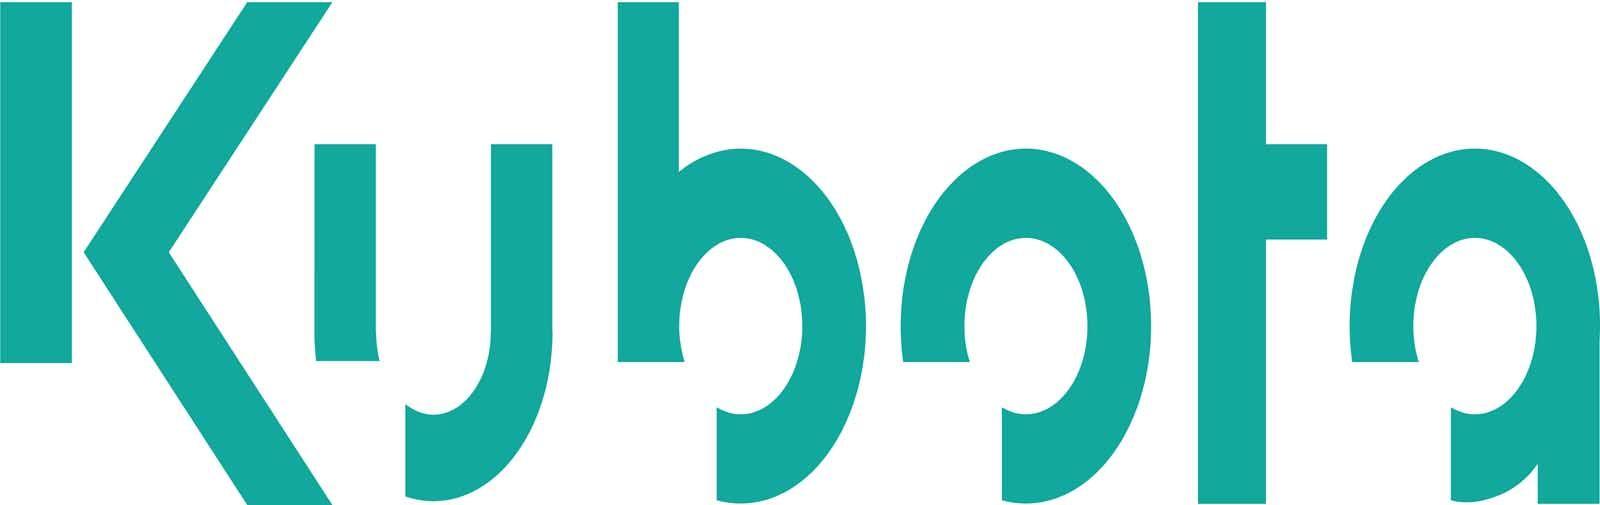 Kabota Logo - Kubota Logos